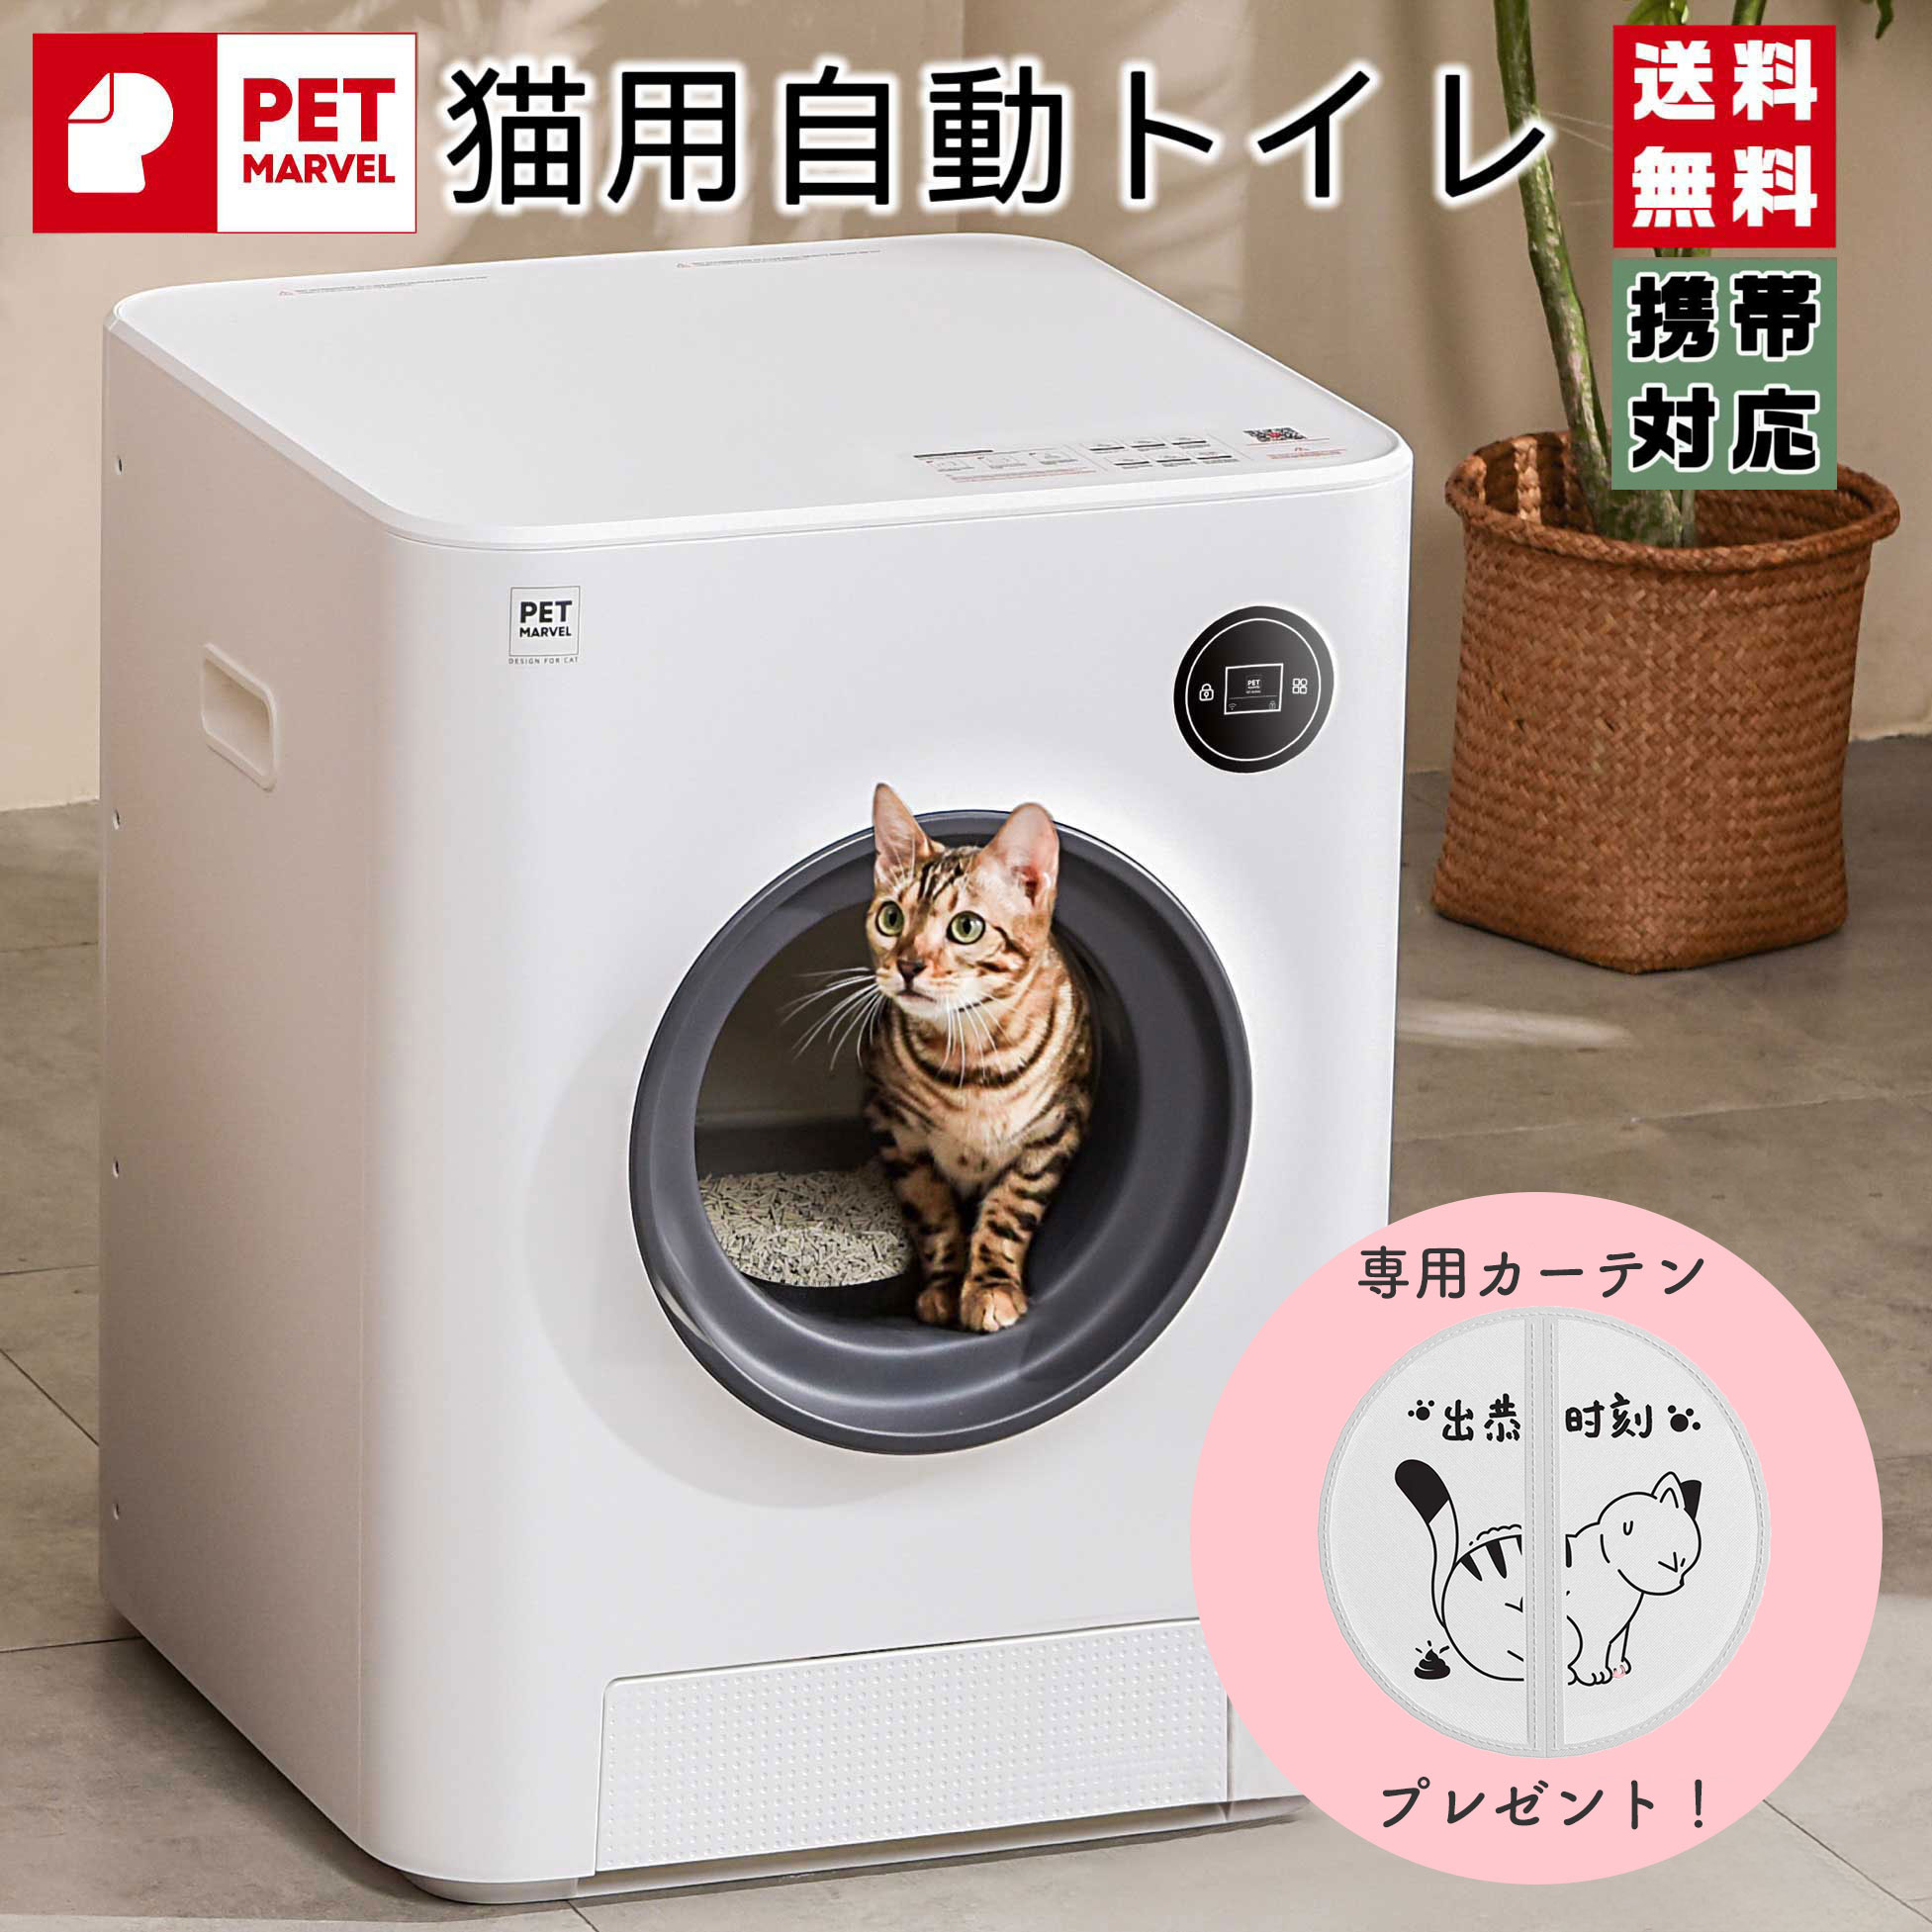 カーテン付き】【PET MARVEL】自動猫用トイレ ペットトイレ ネコトイレ